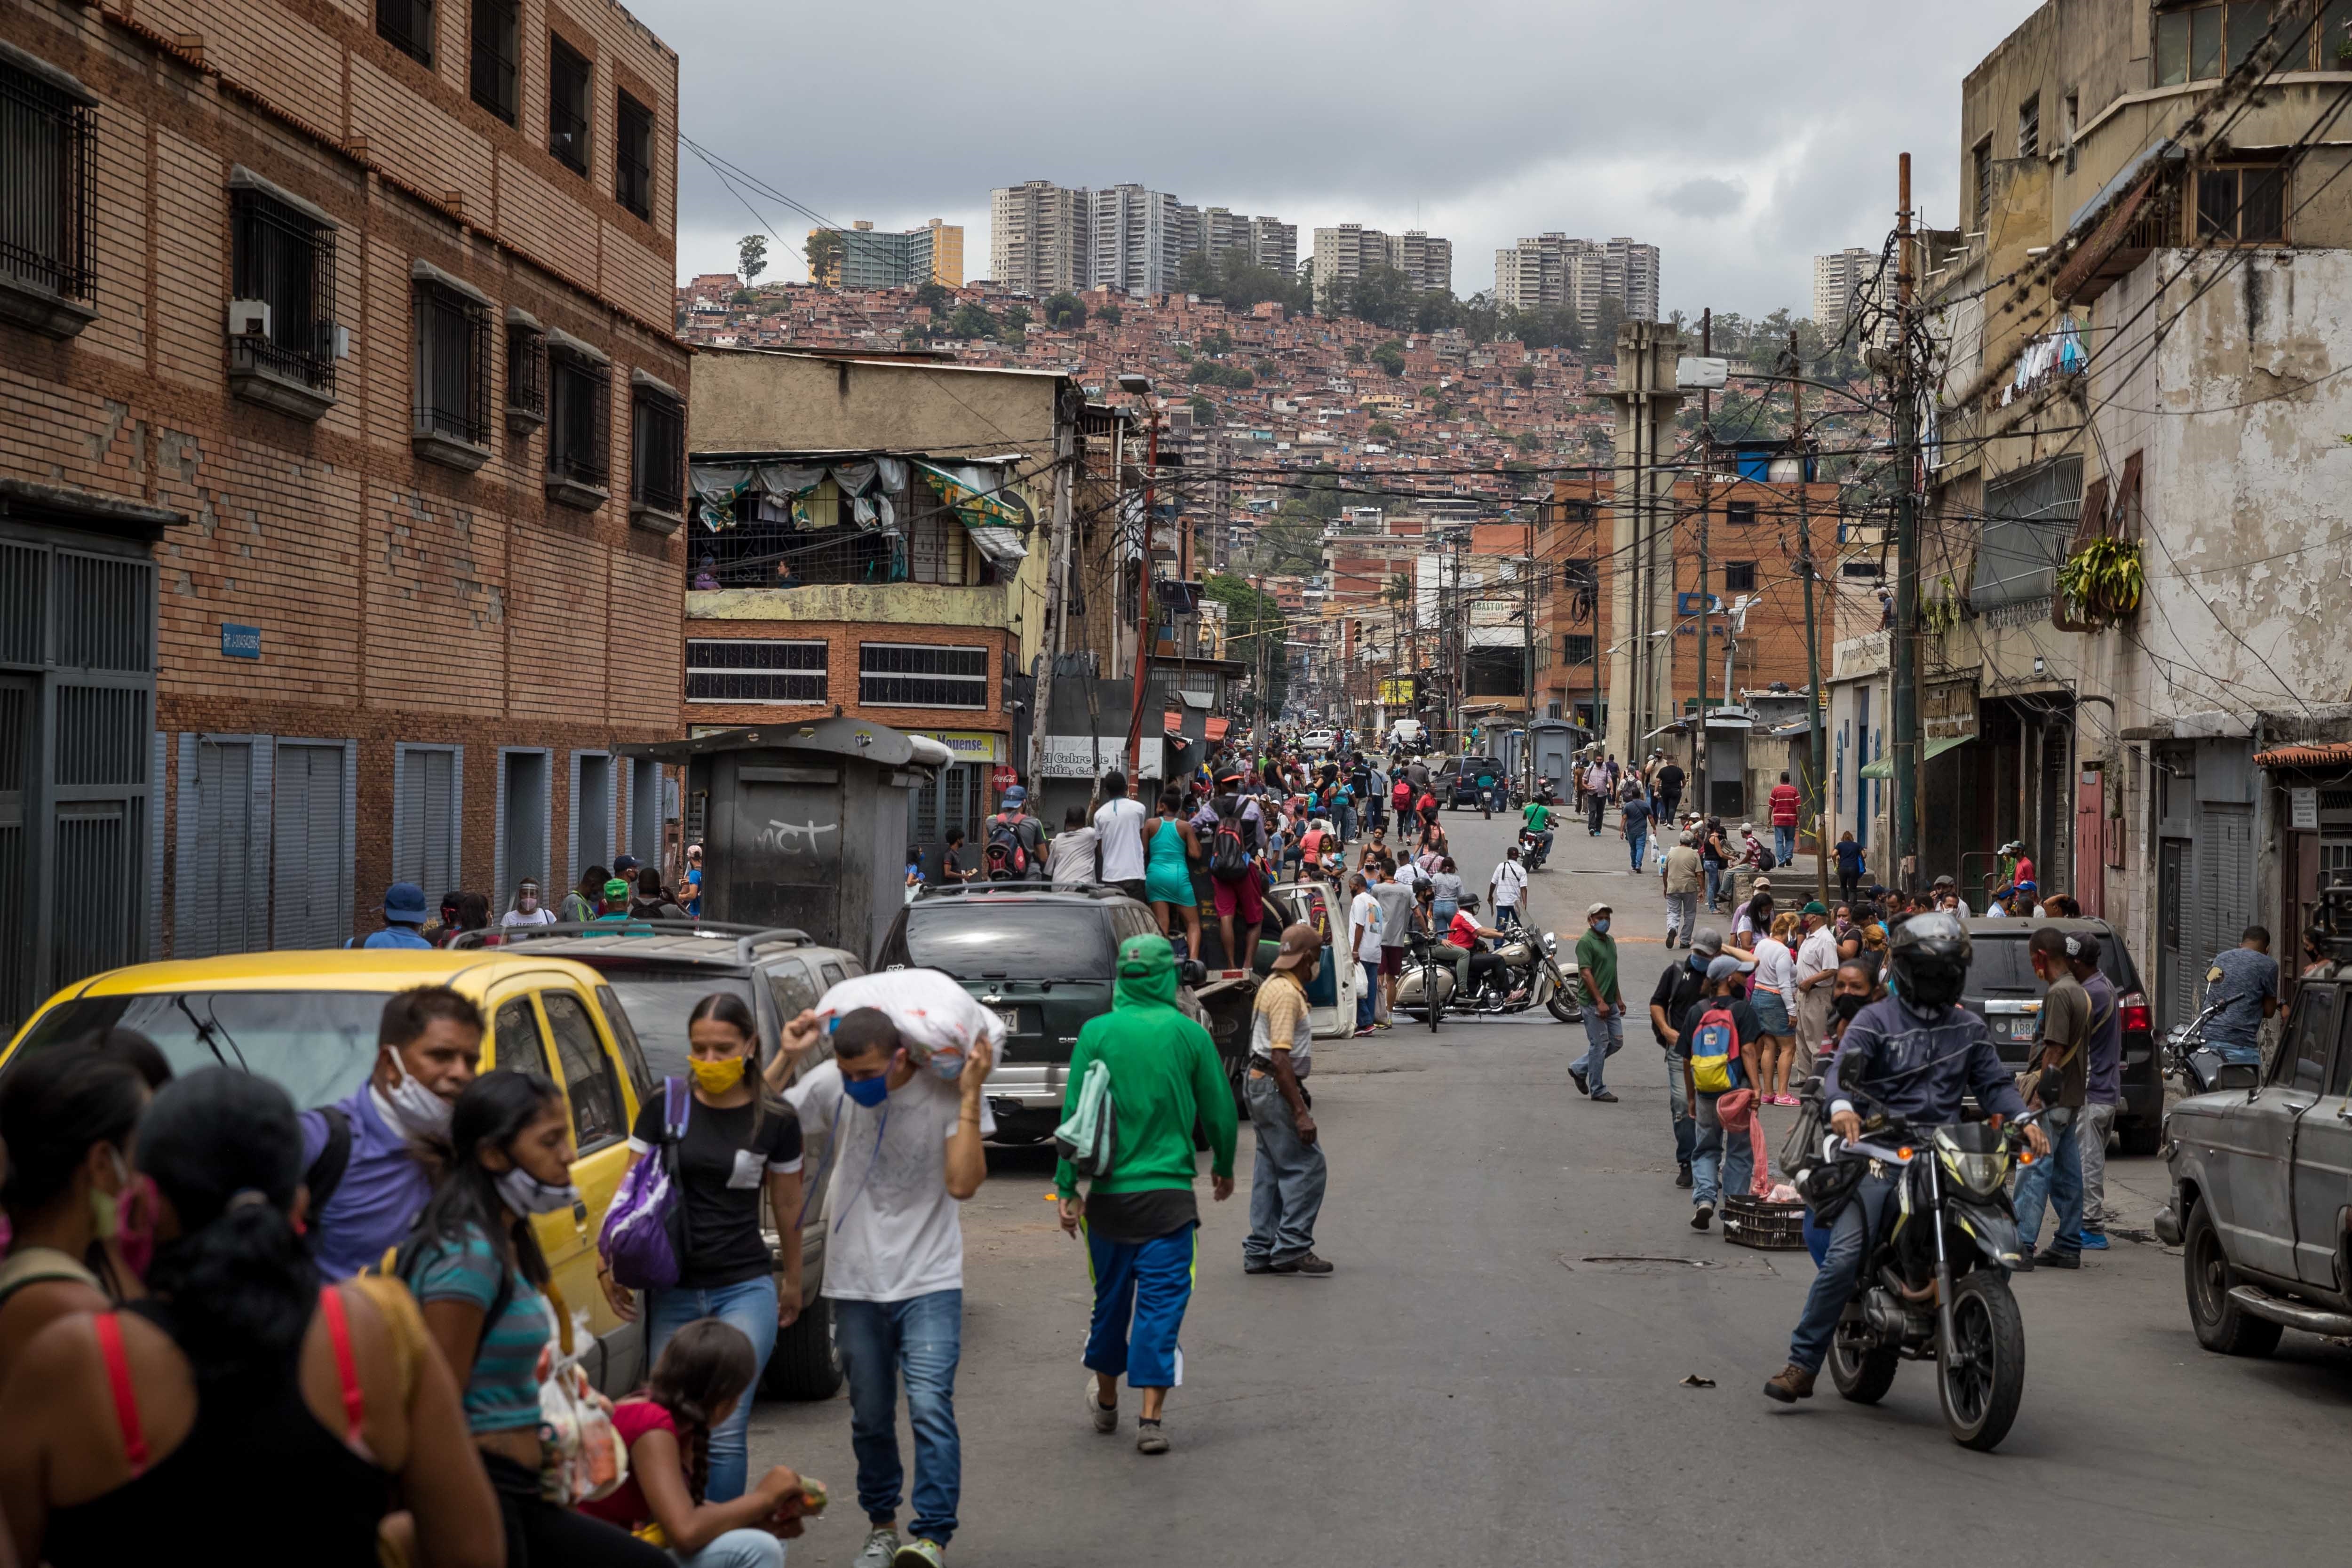 Las 10 razones por las que son fraudulentas las elecciones de Nicolás Maduro